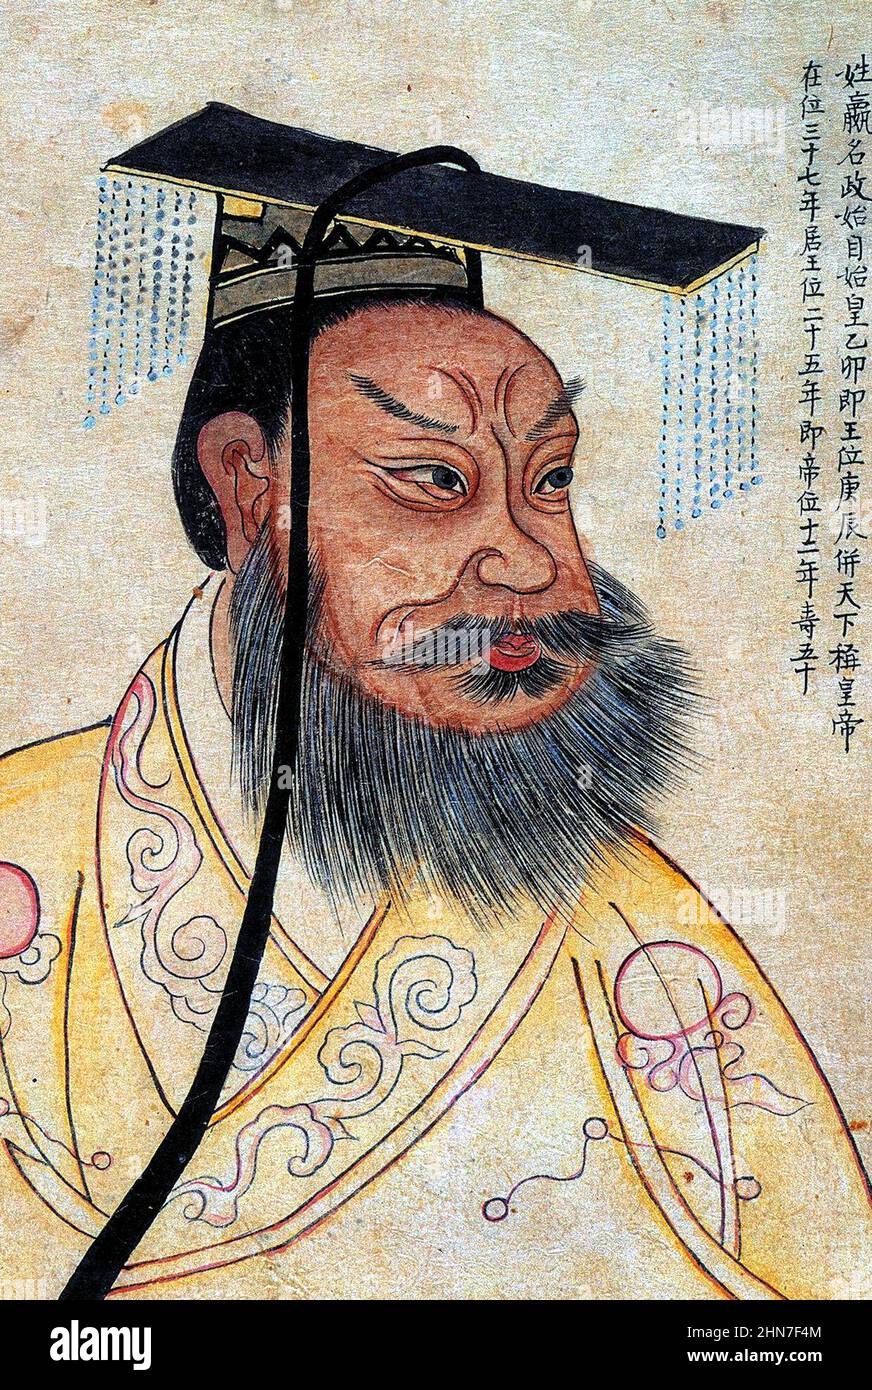 Qin Shi Huang dans un portrait du 19th siècle, avec des colophons coréens, dans un album présentant des figures historiques célèbres. C'est une copie d'un portrait chinois 1609 Banque D'Images